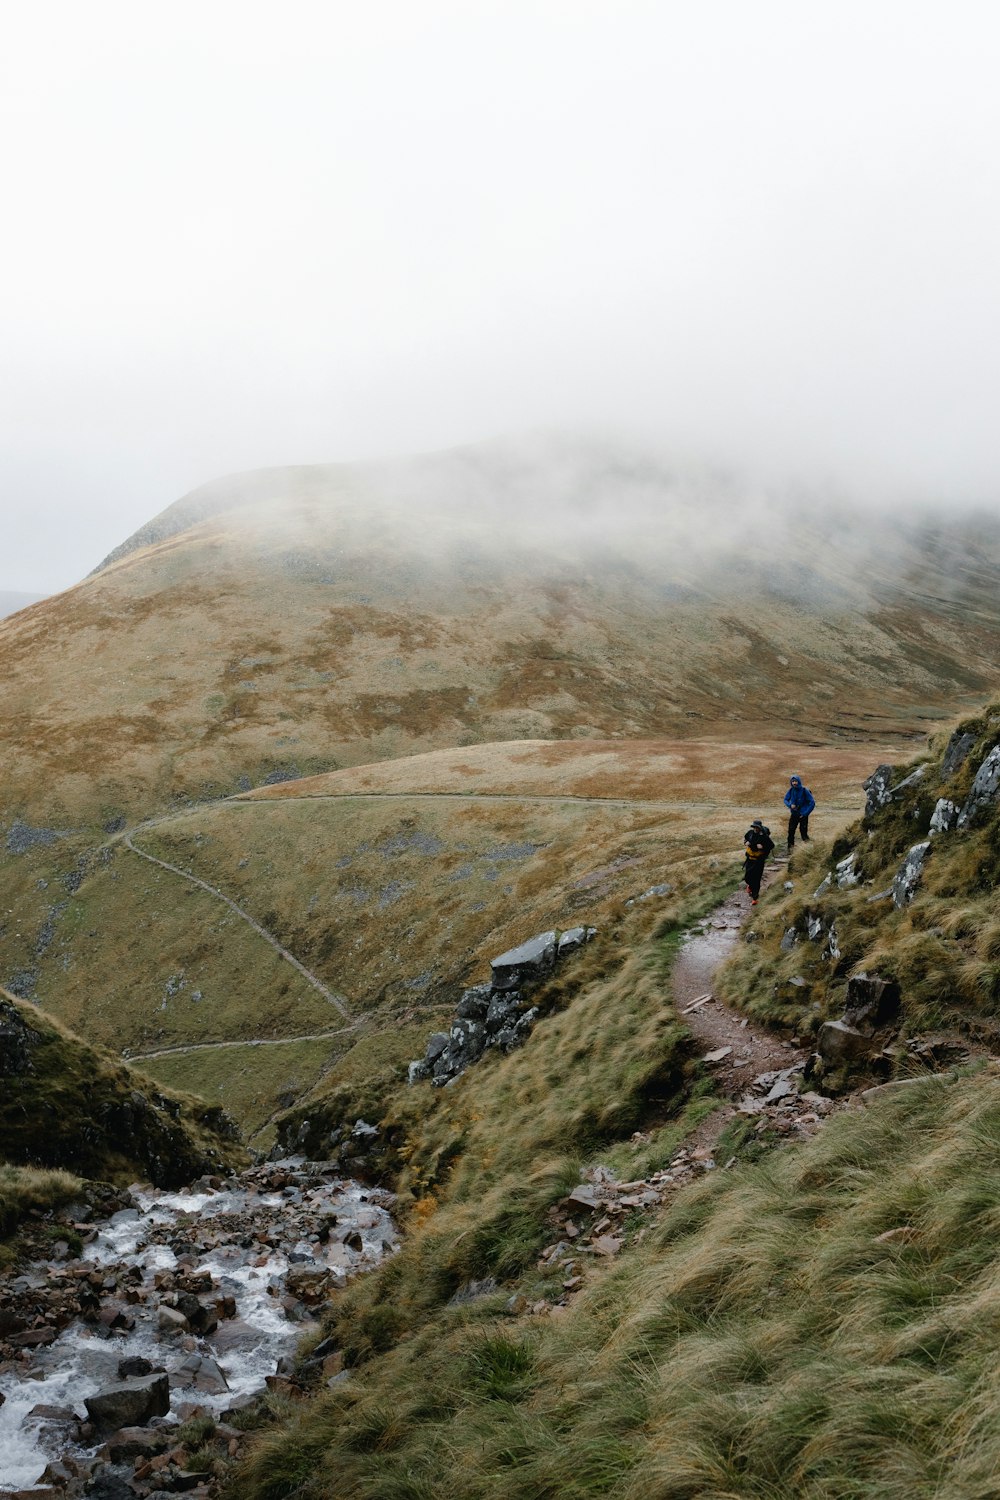 Un grupo de personas caminando por un sendero en una zona montañosa